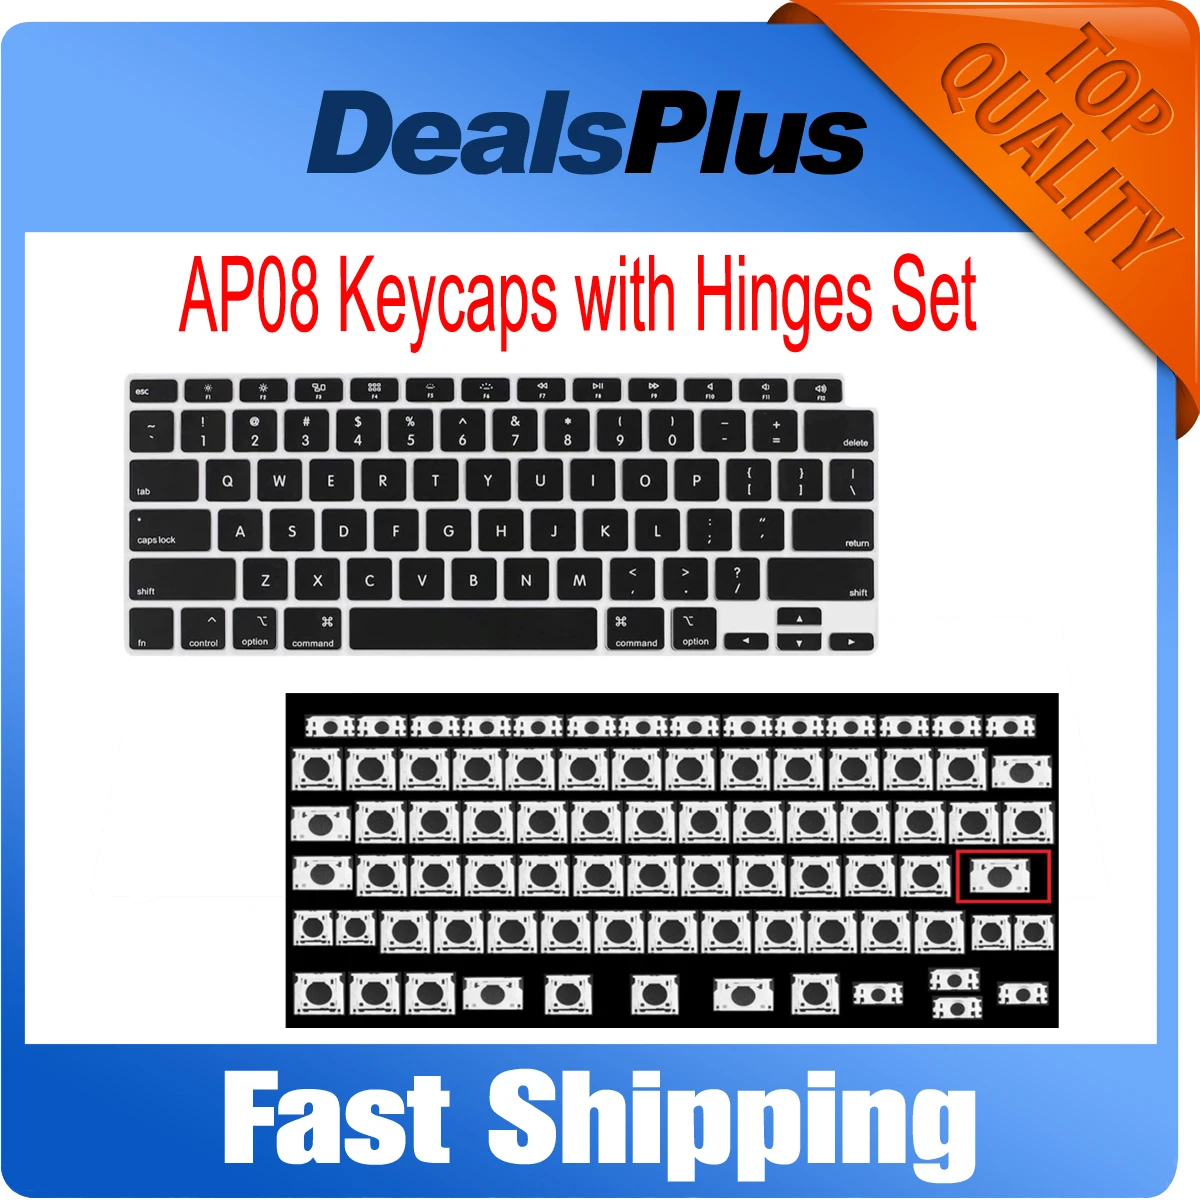 New AP08 Keycap Keys with Hinge Scissor Clip Set For Macbook Air Pro Retina A1369 A1466 A1425 A1502 A1398